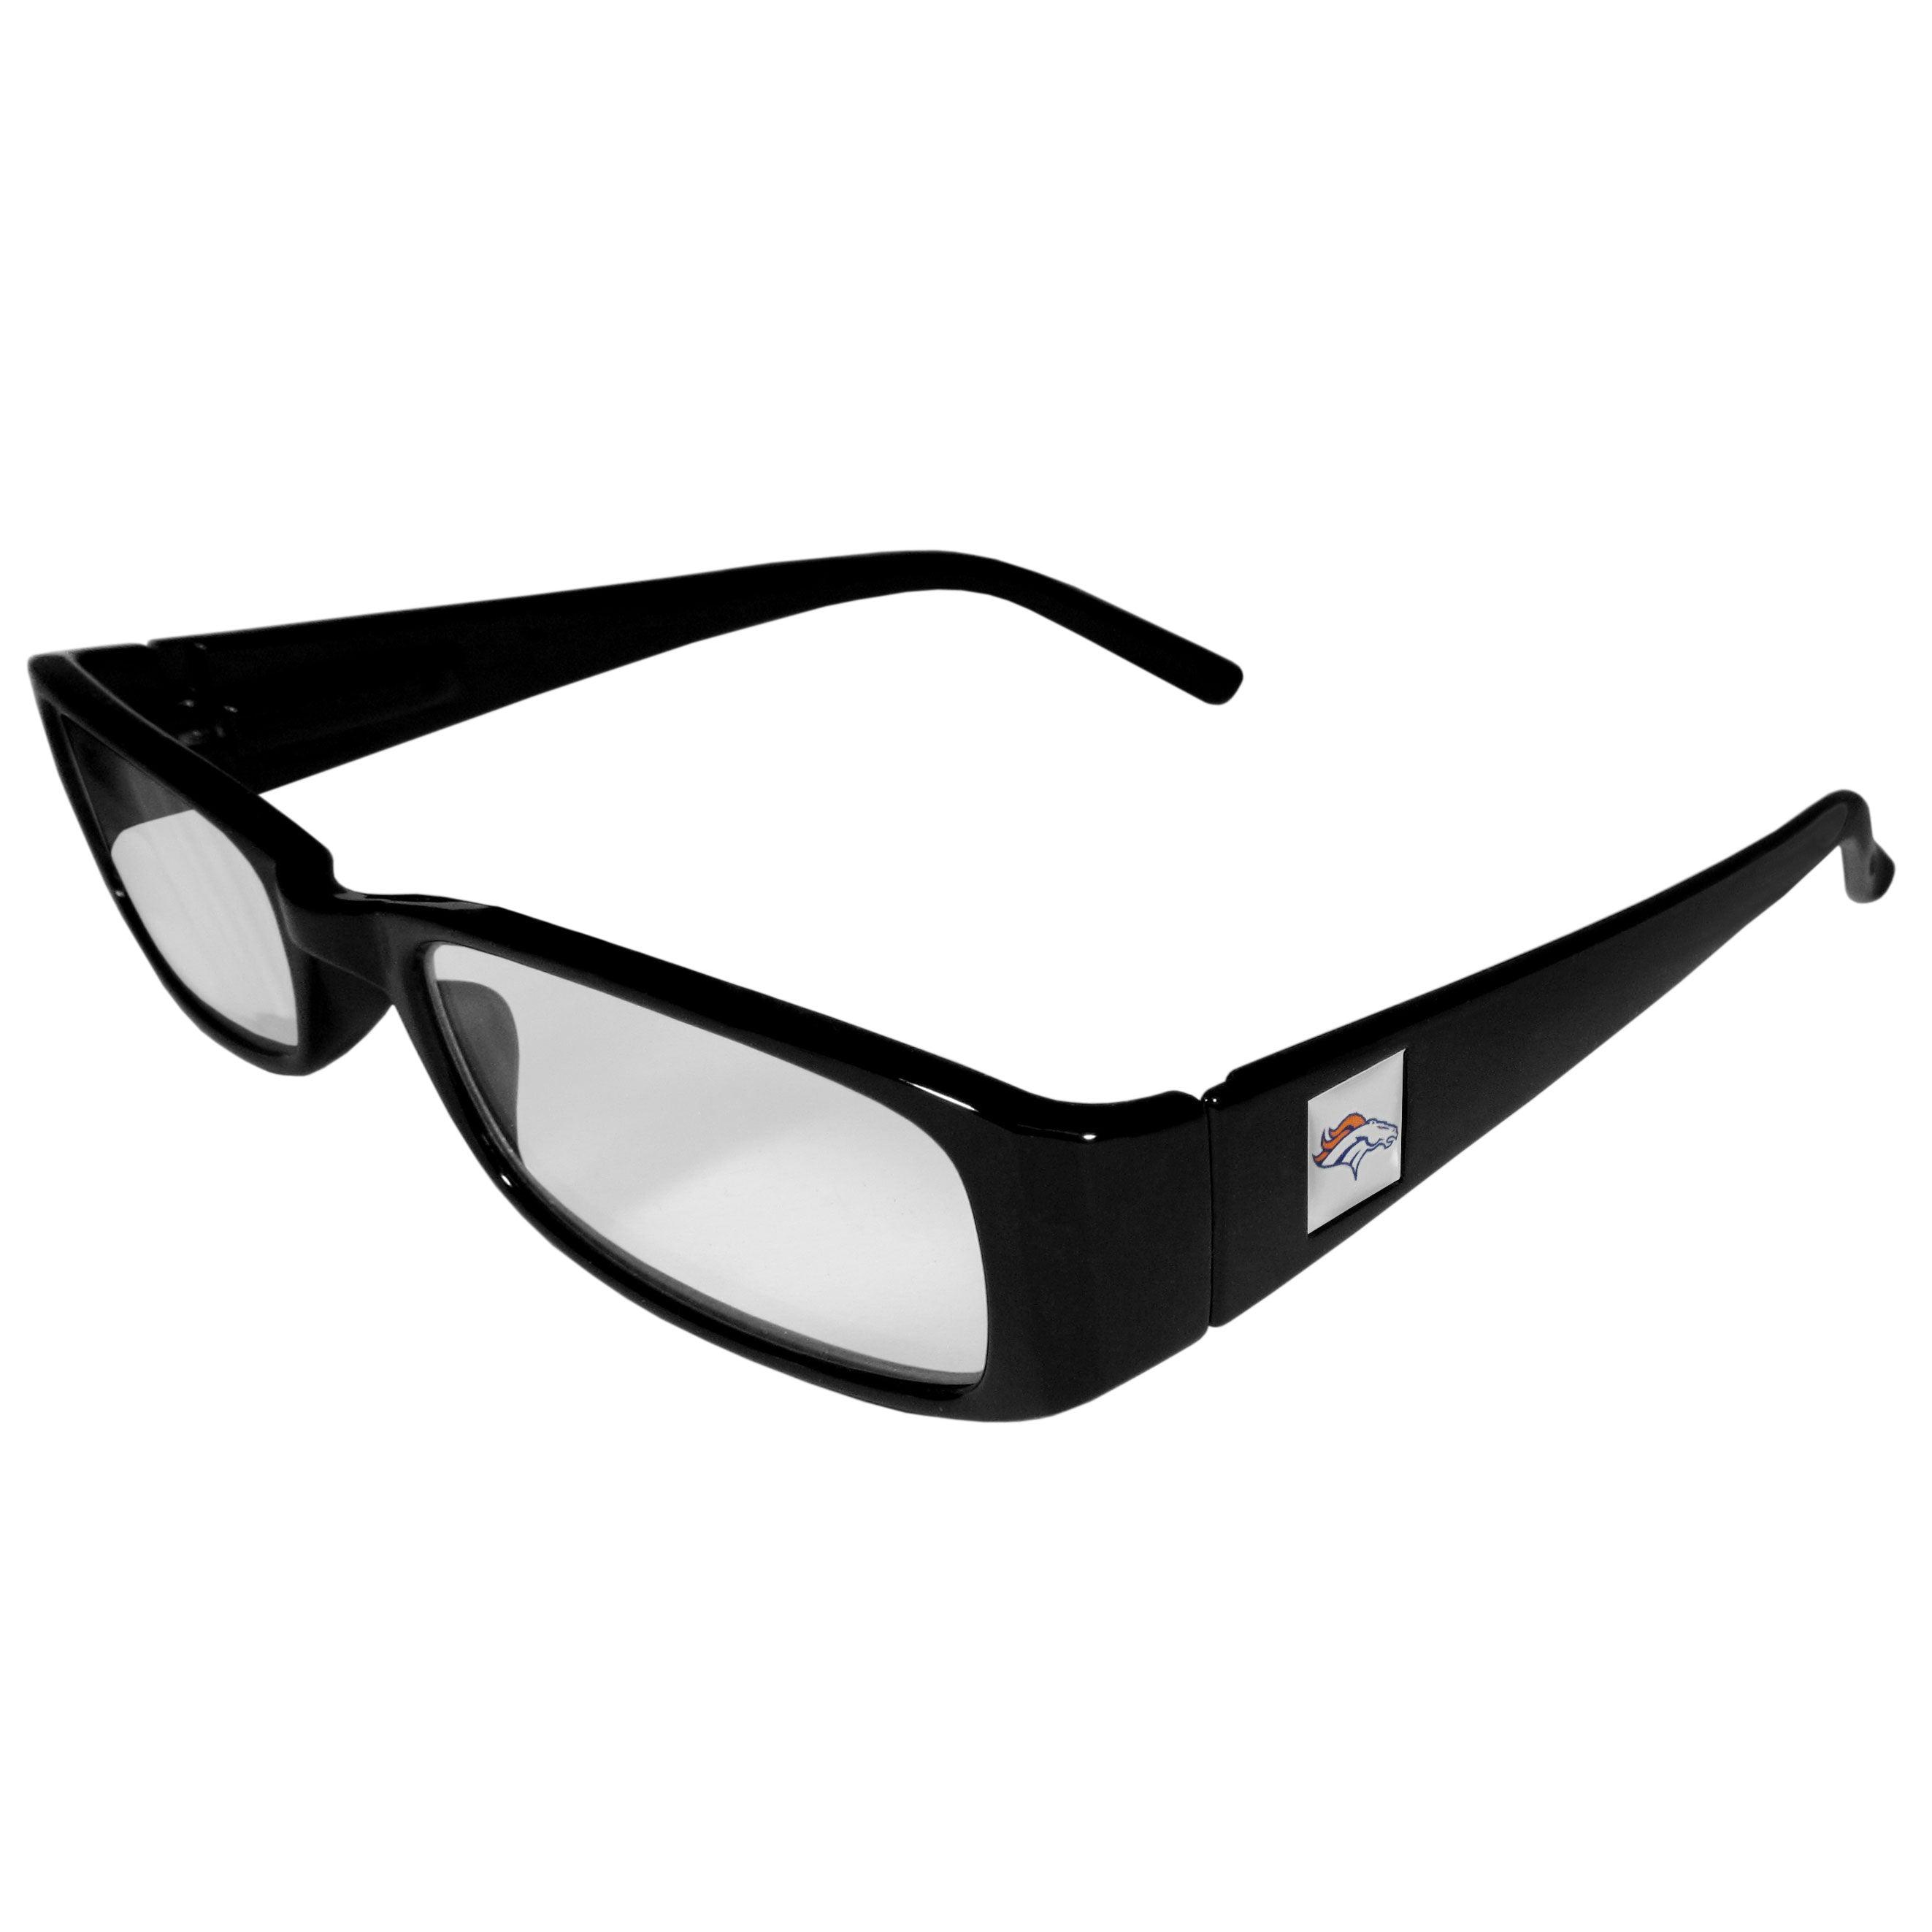 Denver Broncos Black Reading Glasses +1.75 - Flyclothing LLC